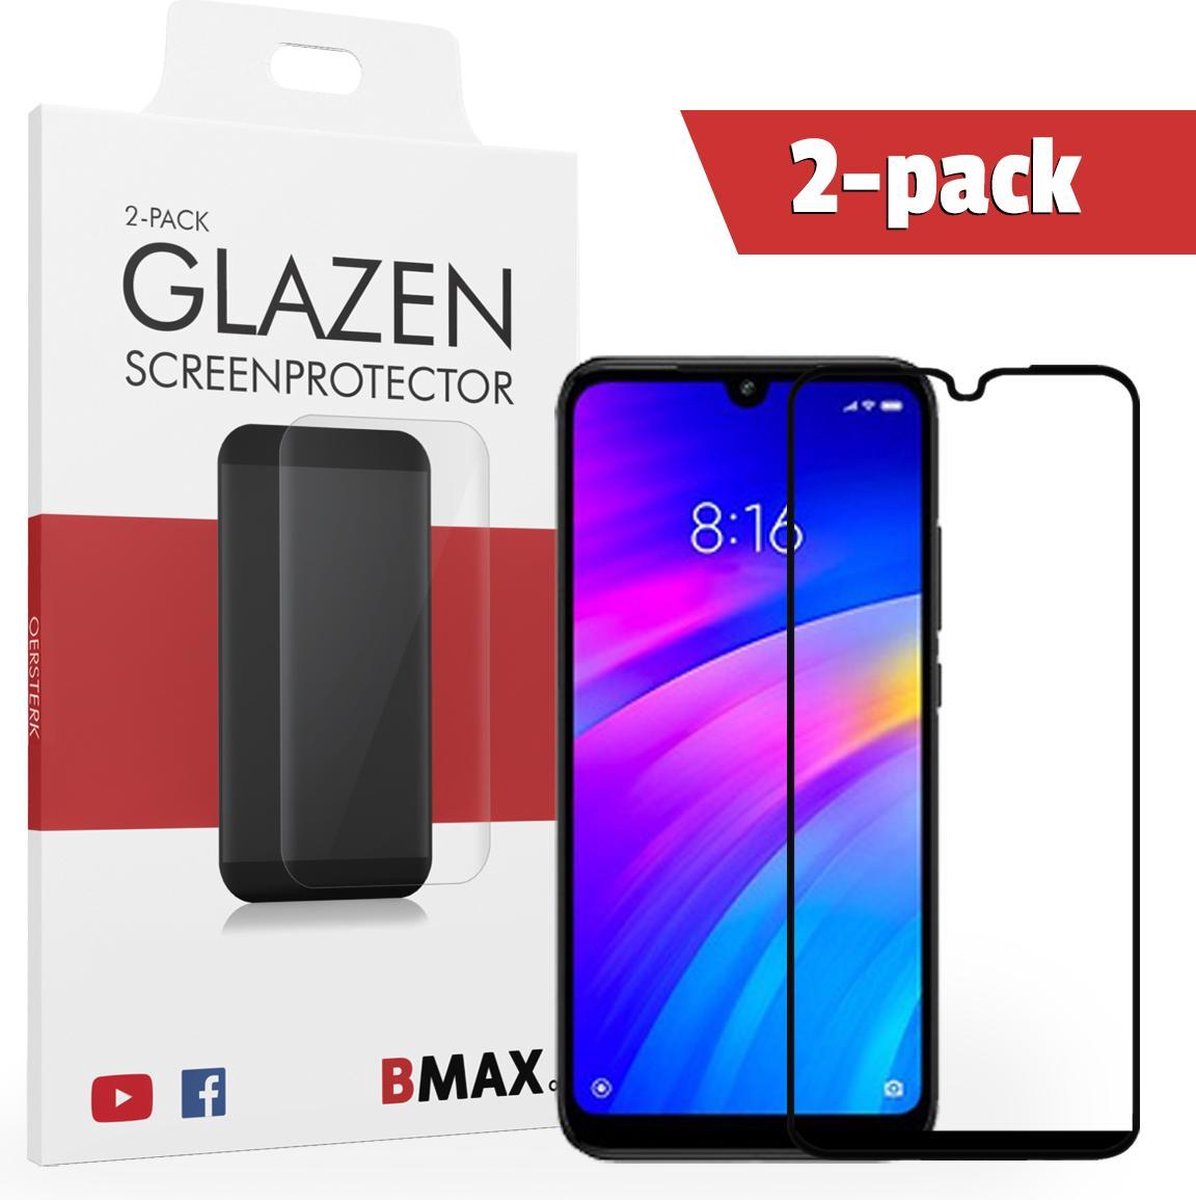 2-pack Bmax Xiaomi Redmi 7 Screenprotector - Glass - Full Cover 2.5d - Black